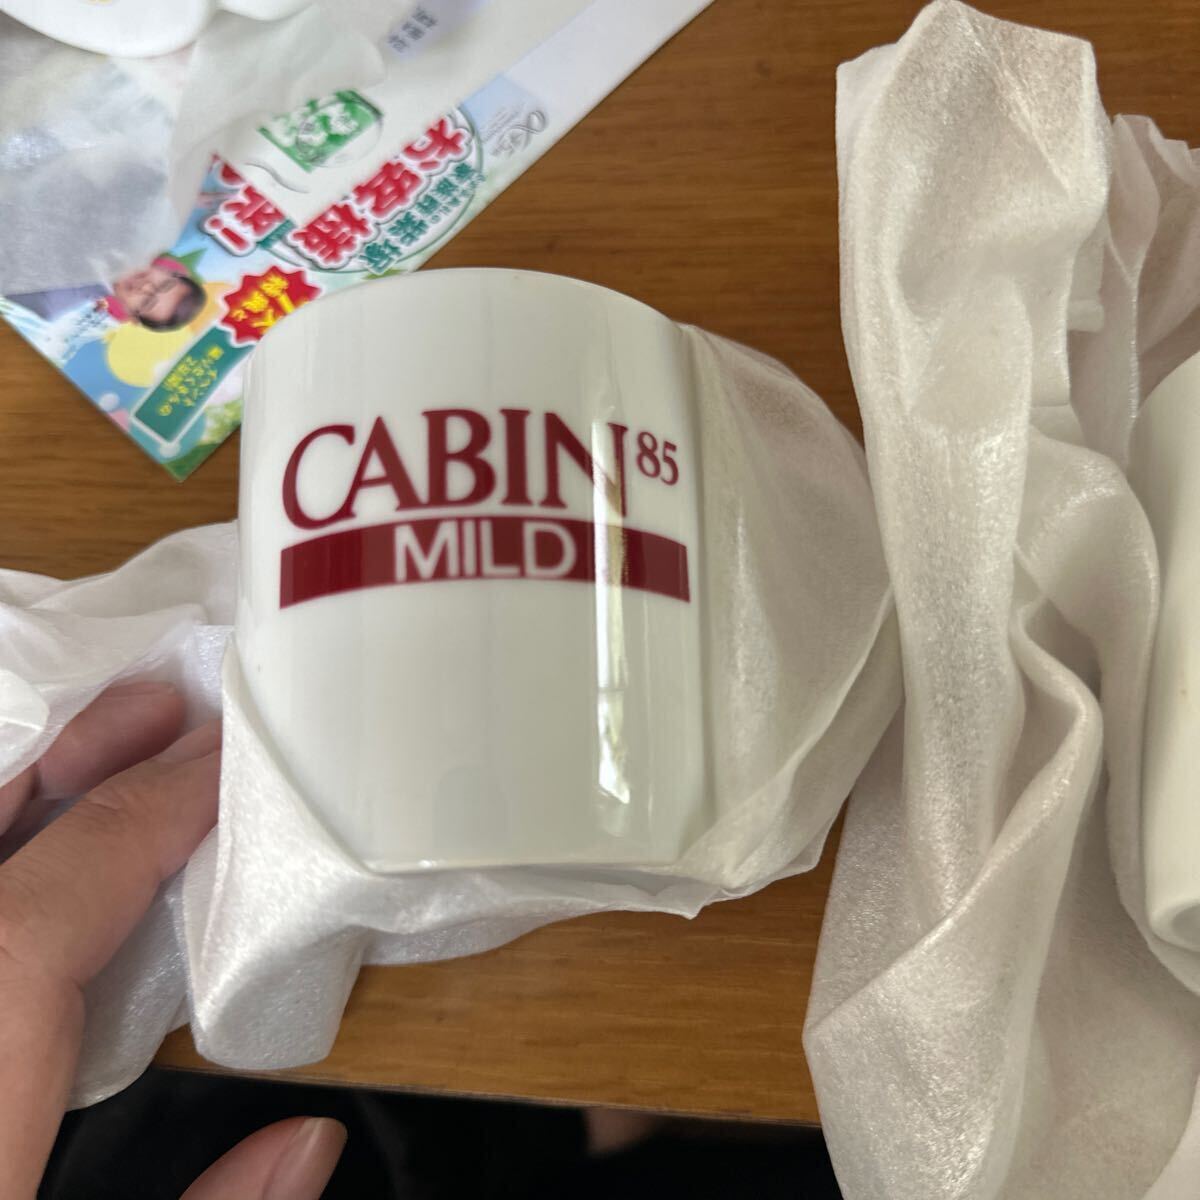  not for sale cabin 85 mild seven mug 